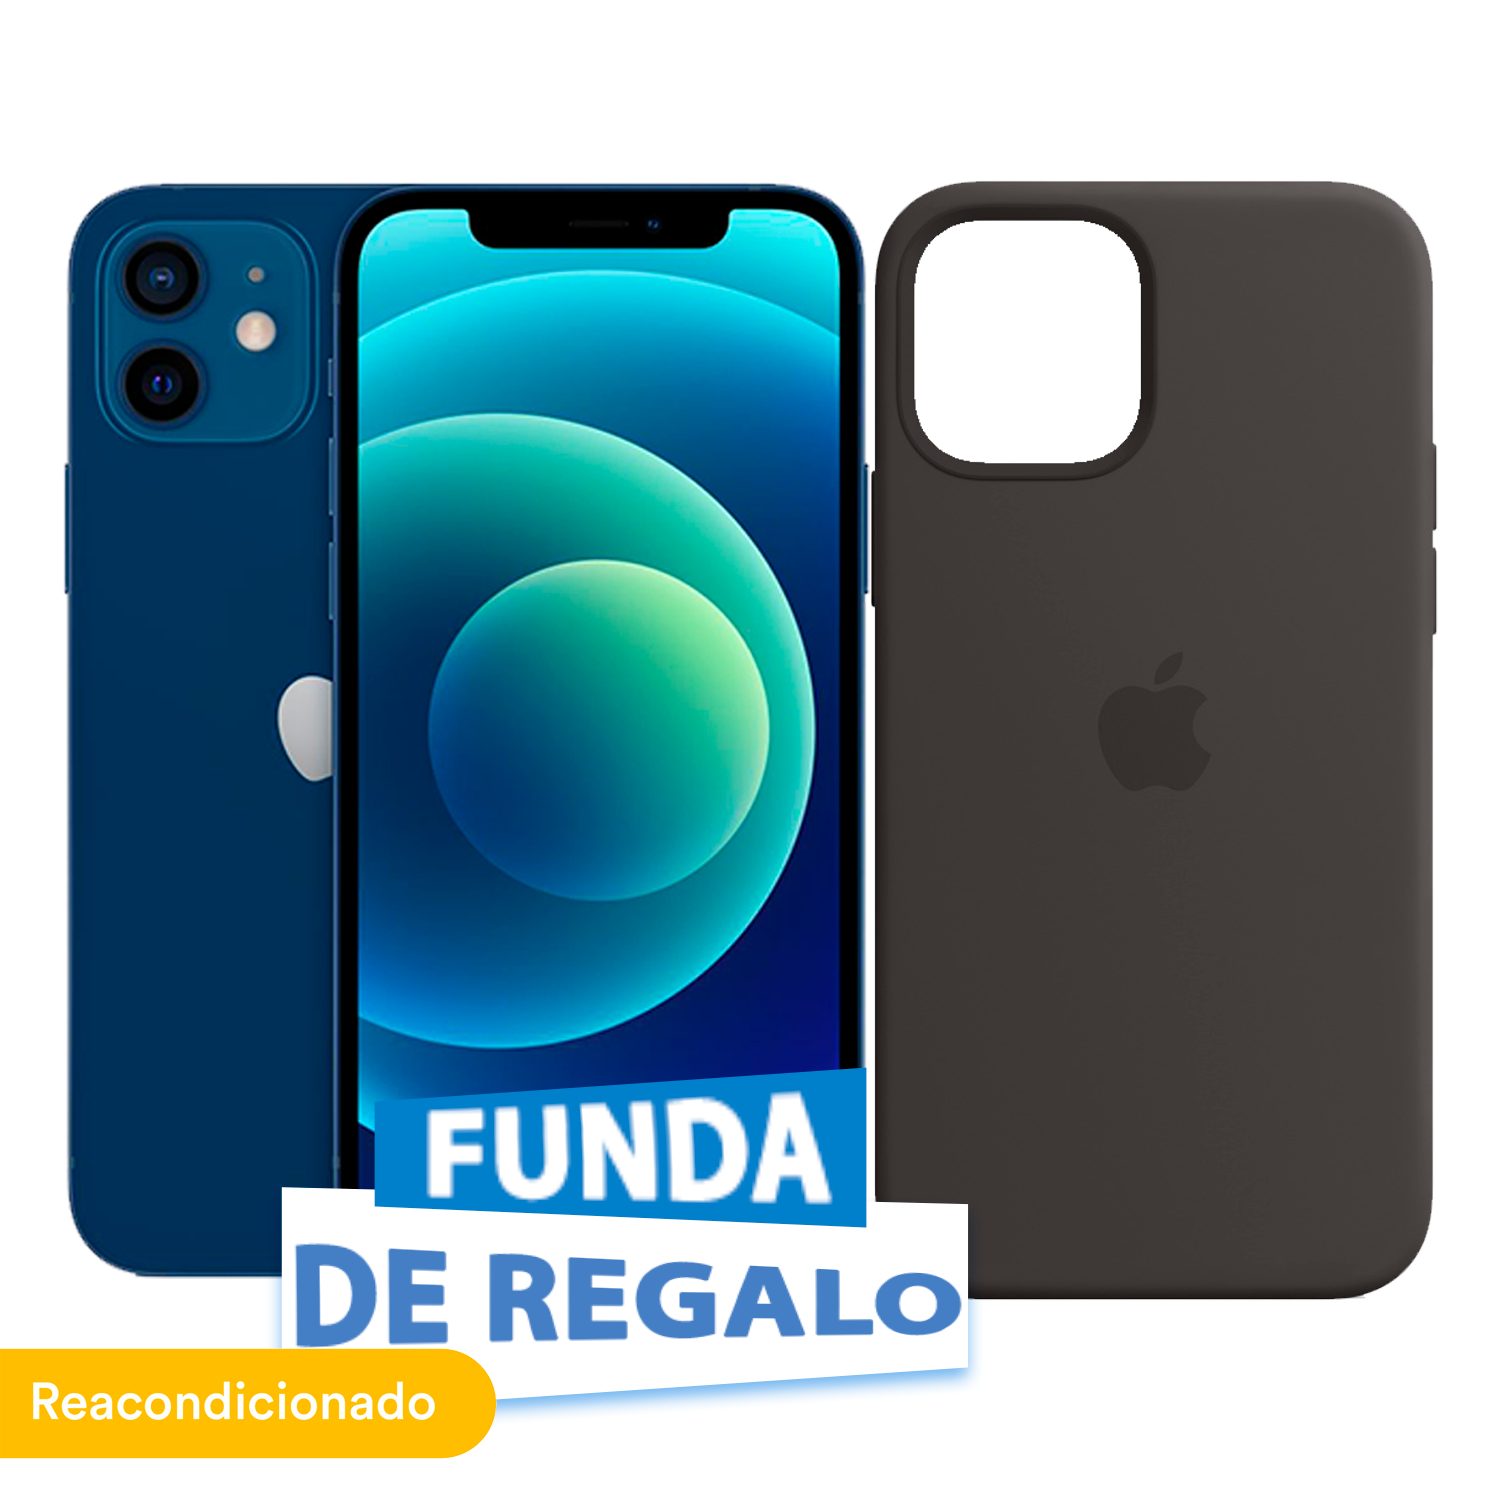 Creditienda - Celular Reacondicionado Apple iPhone 12 64GB Azul + Funda de Regalo